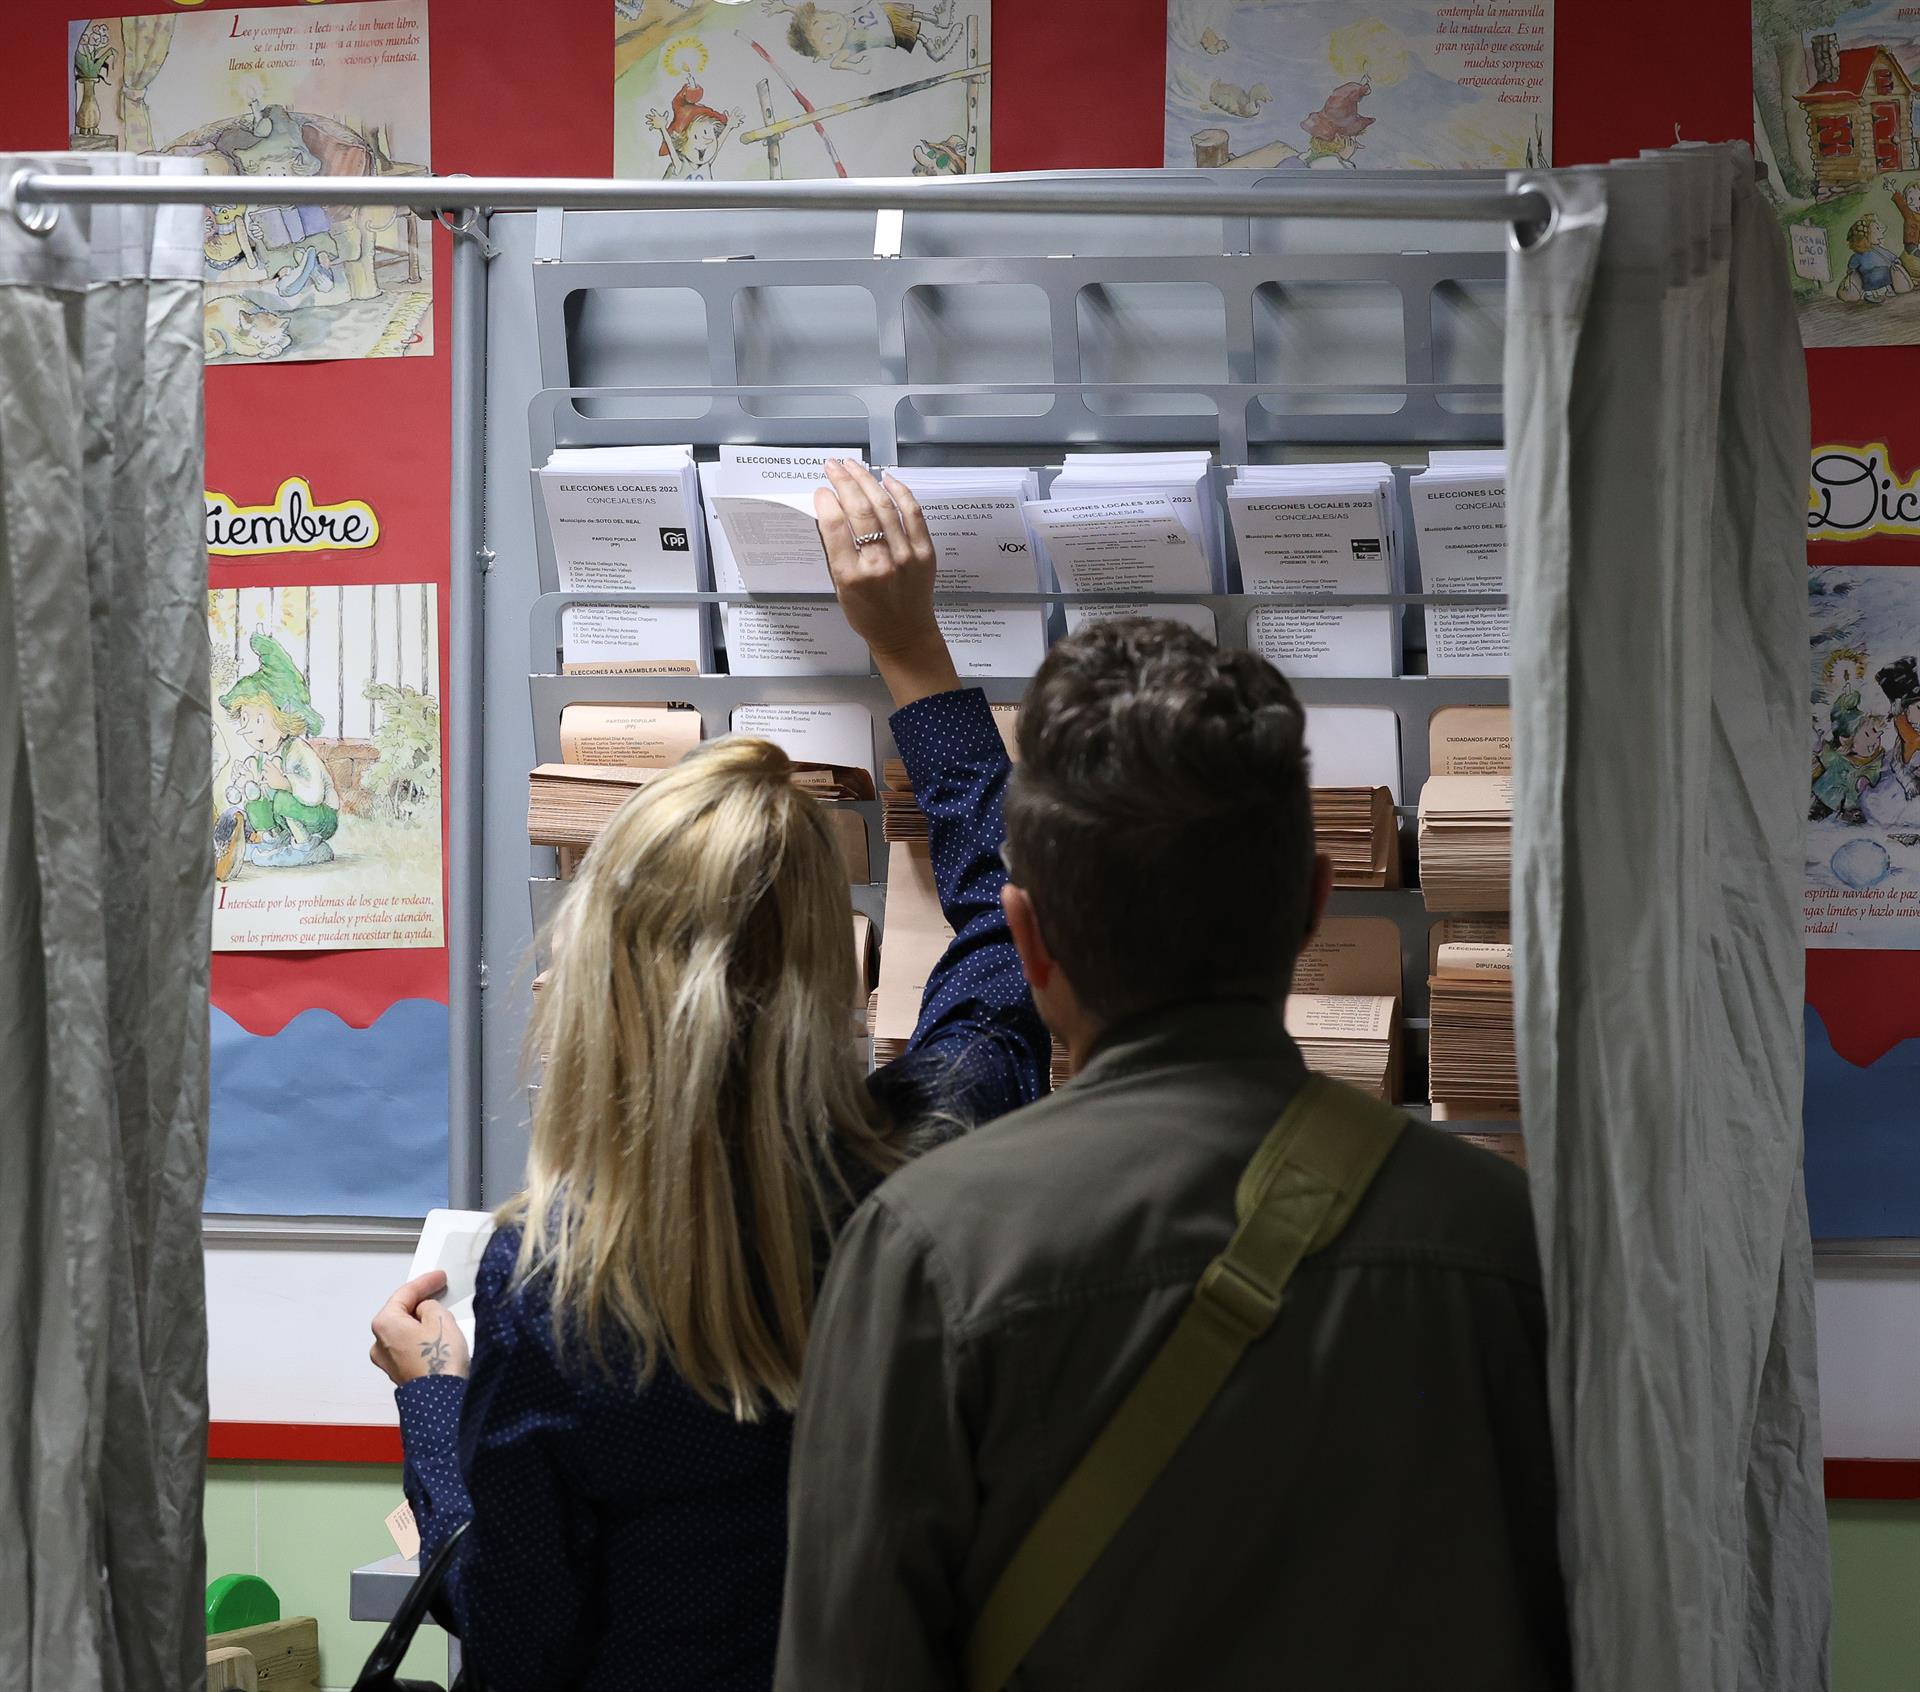 Votantes eligen las papeletas para votar en un colegio electoral. - Marta Fernández Jara - Europa Press - Archivo